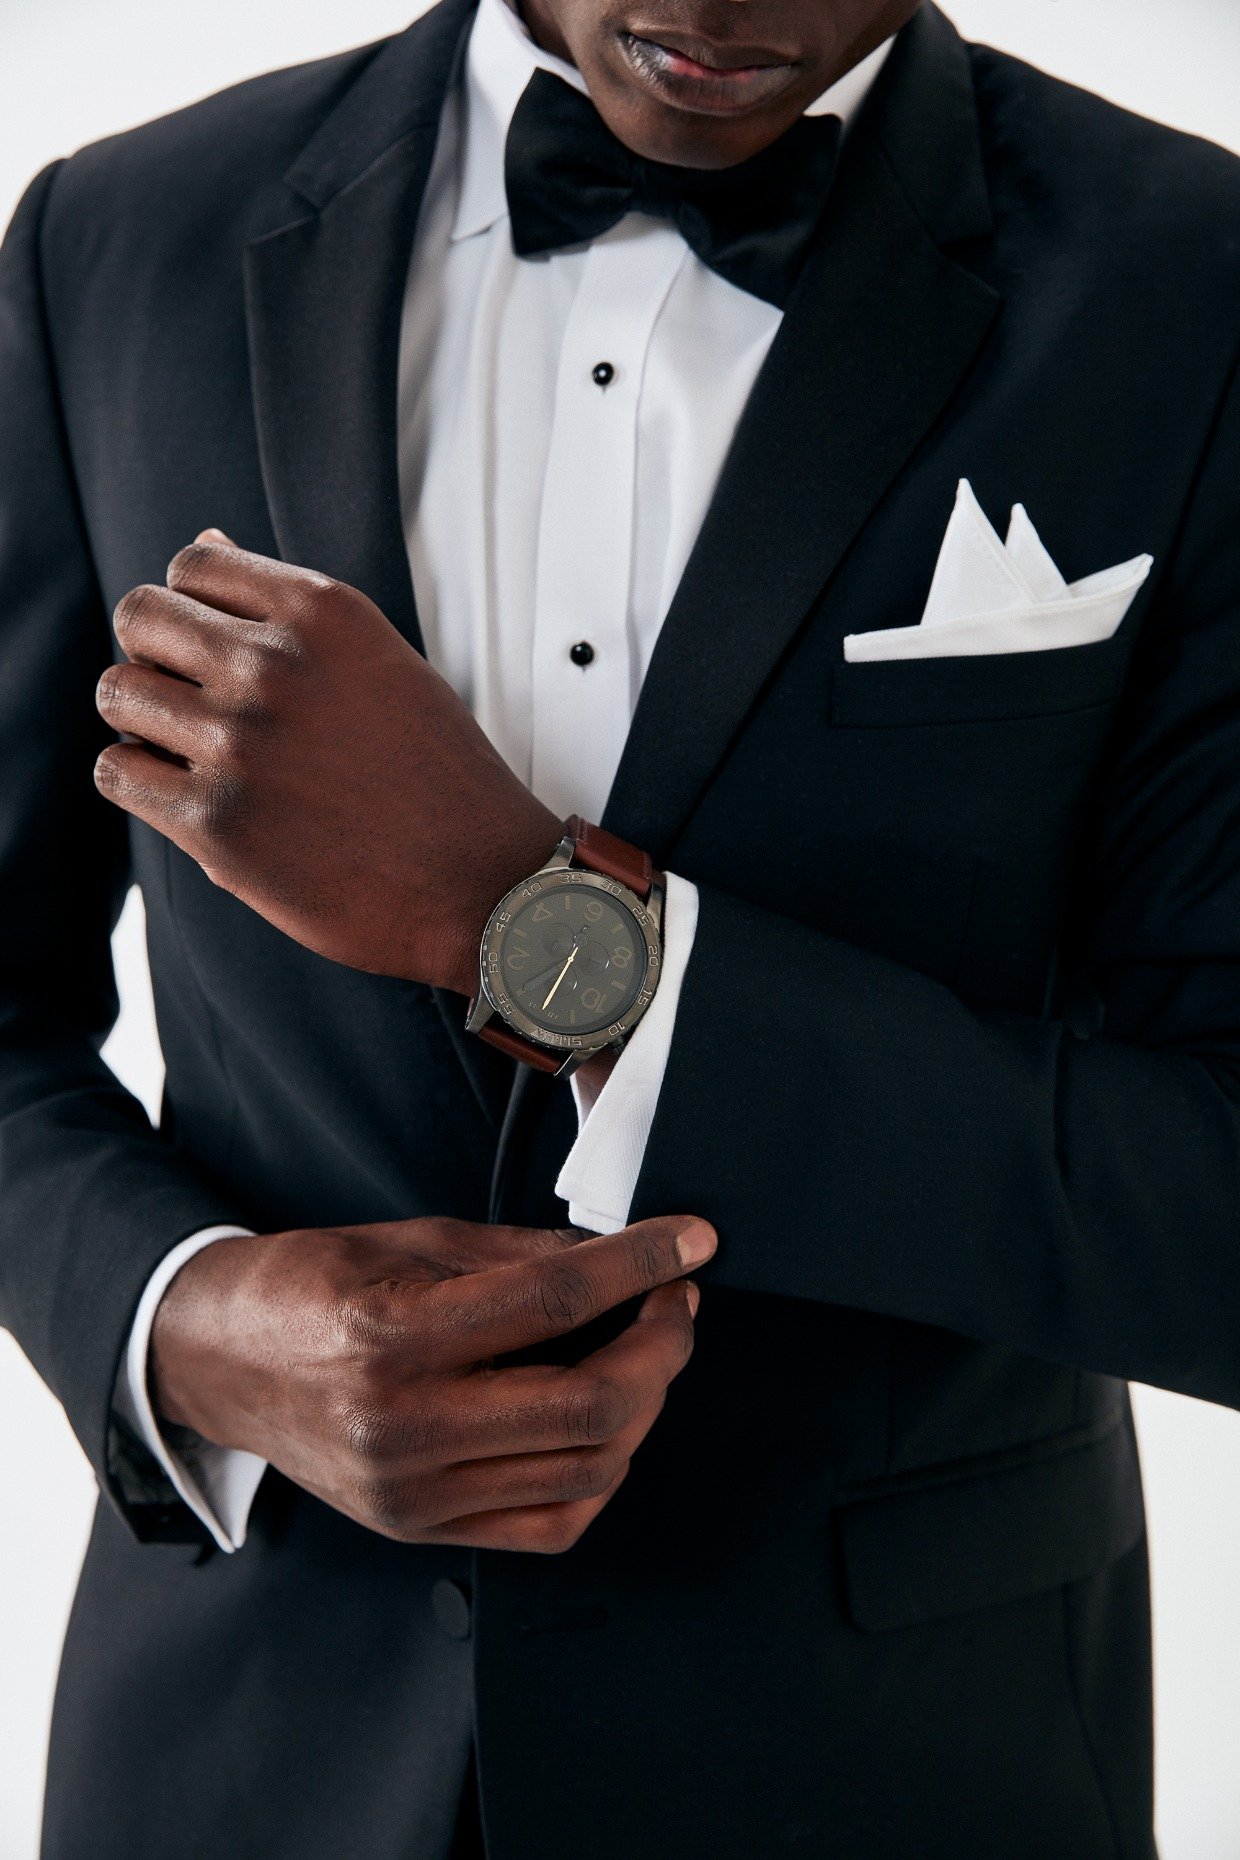 Nixon customizable watch for groom gift